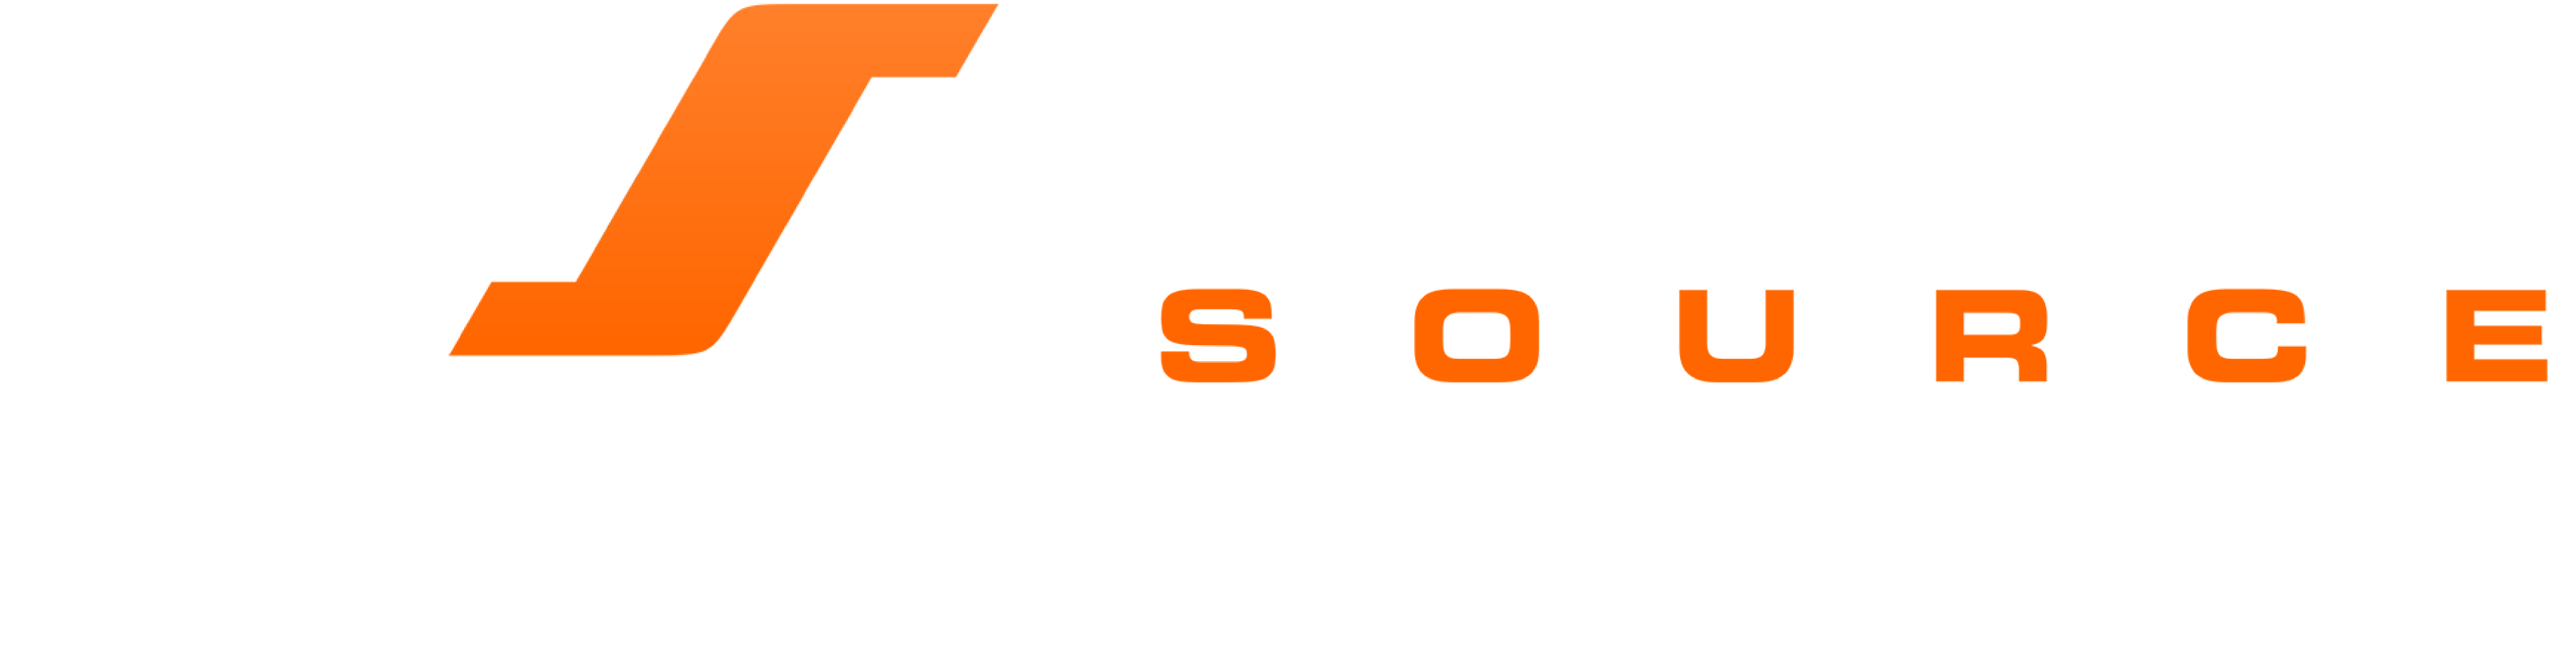 WILCO-Source-Logo-White